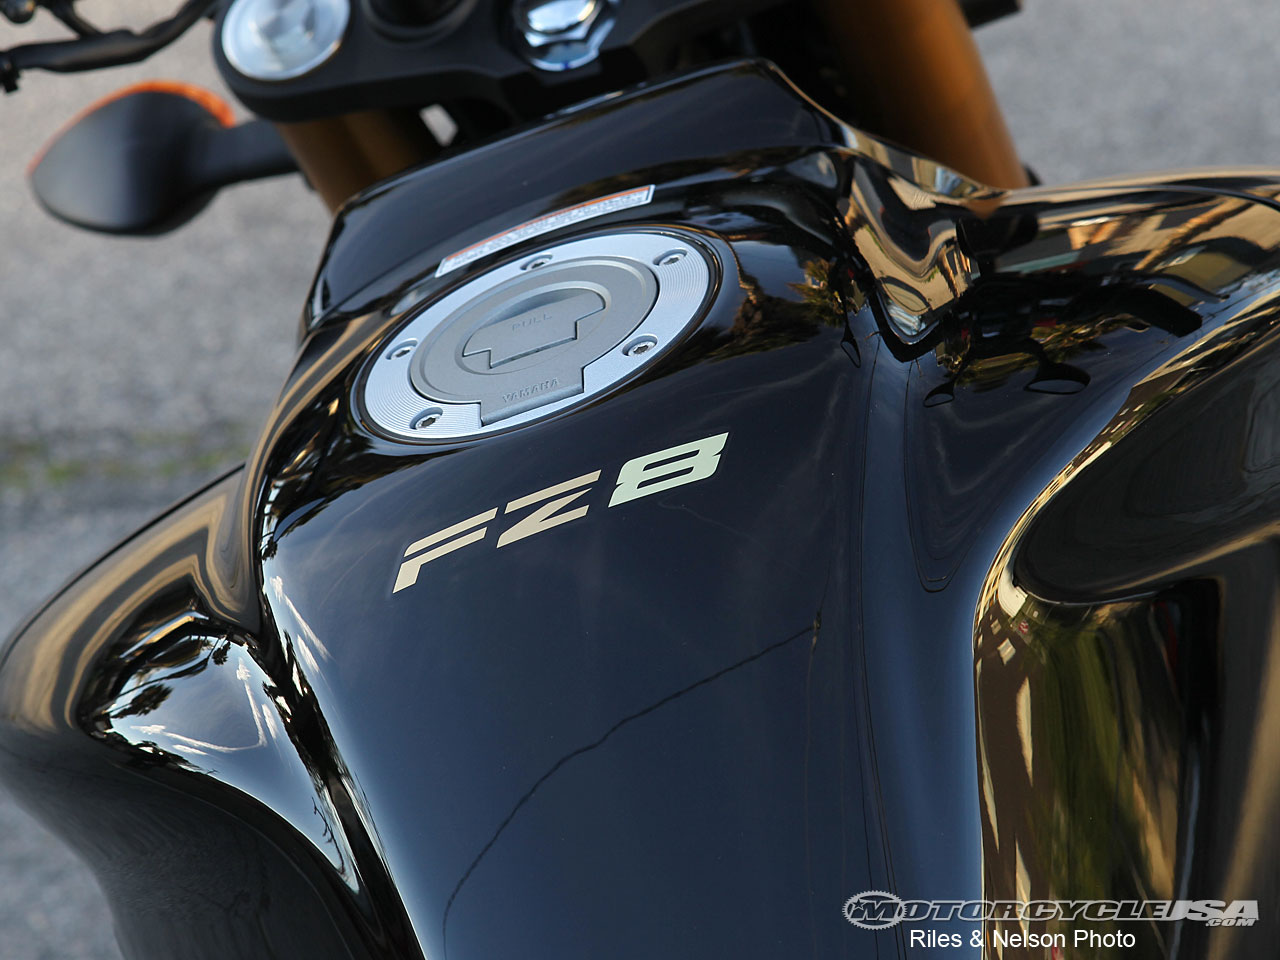 款雅马哈FZ8摩托车图片4